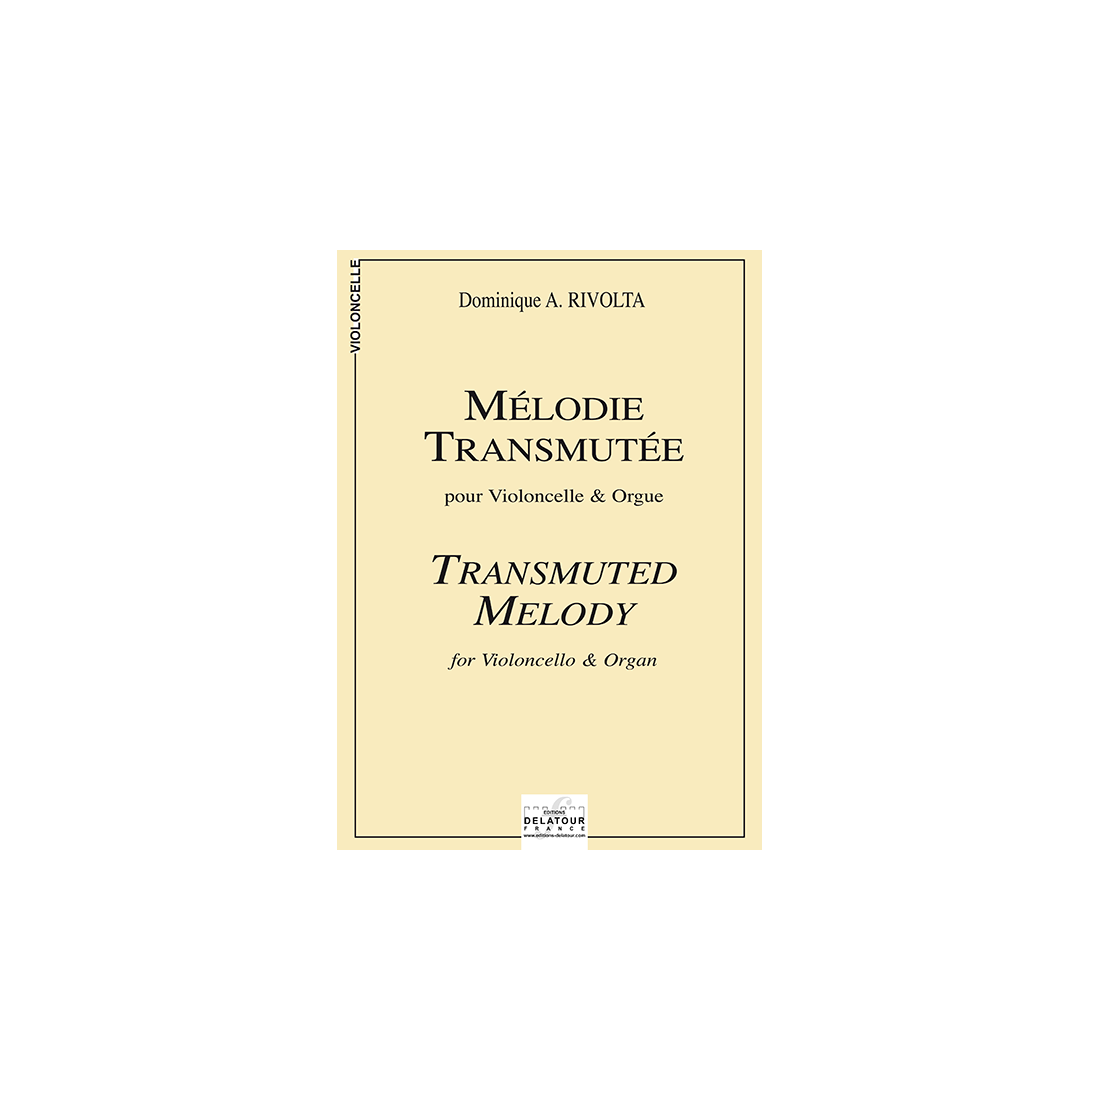 Mélodie transmutée für Violoncello und Orgel